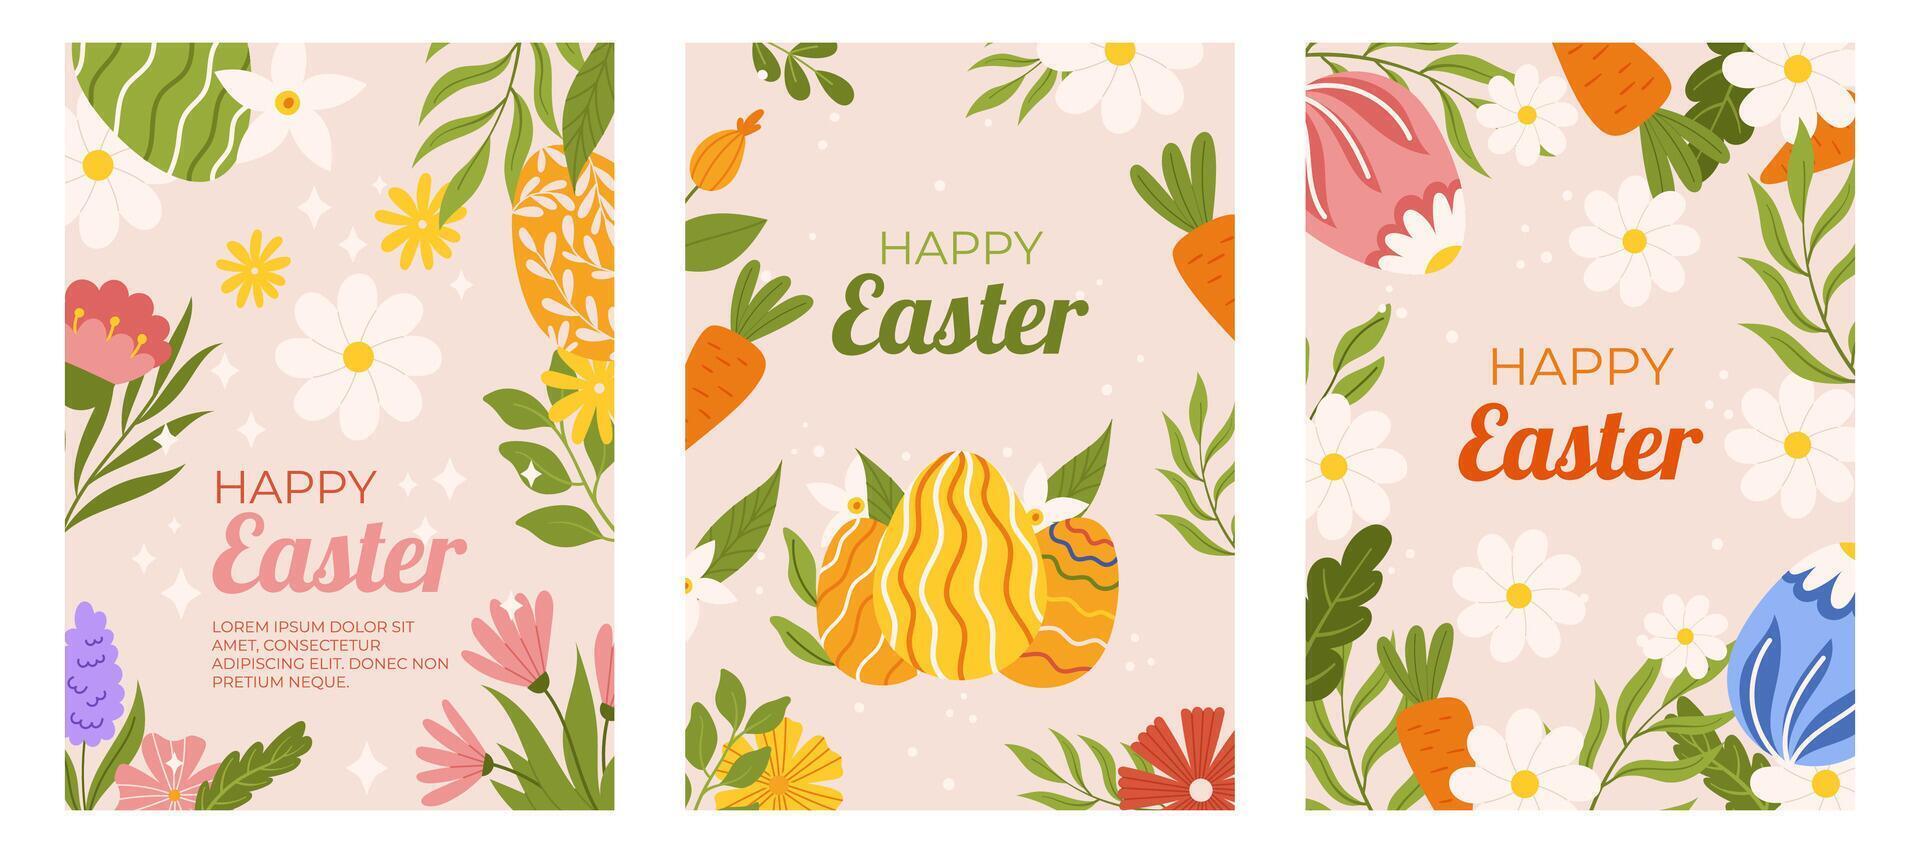 Pascua de Resurrección colección de vertical saludo tarjetas modelo. diseño con floral marcos, pintado huevos, margarita y zanahoria. mano dibujado plano vector ilustración